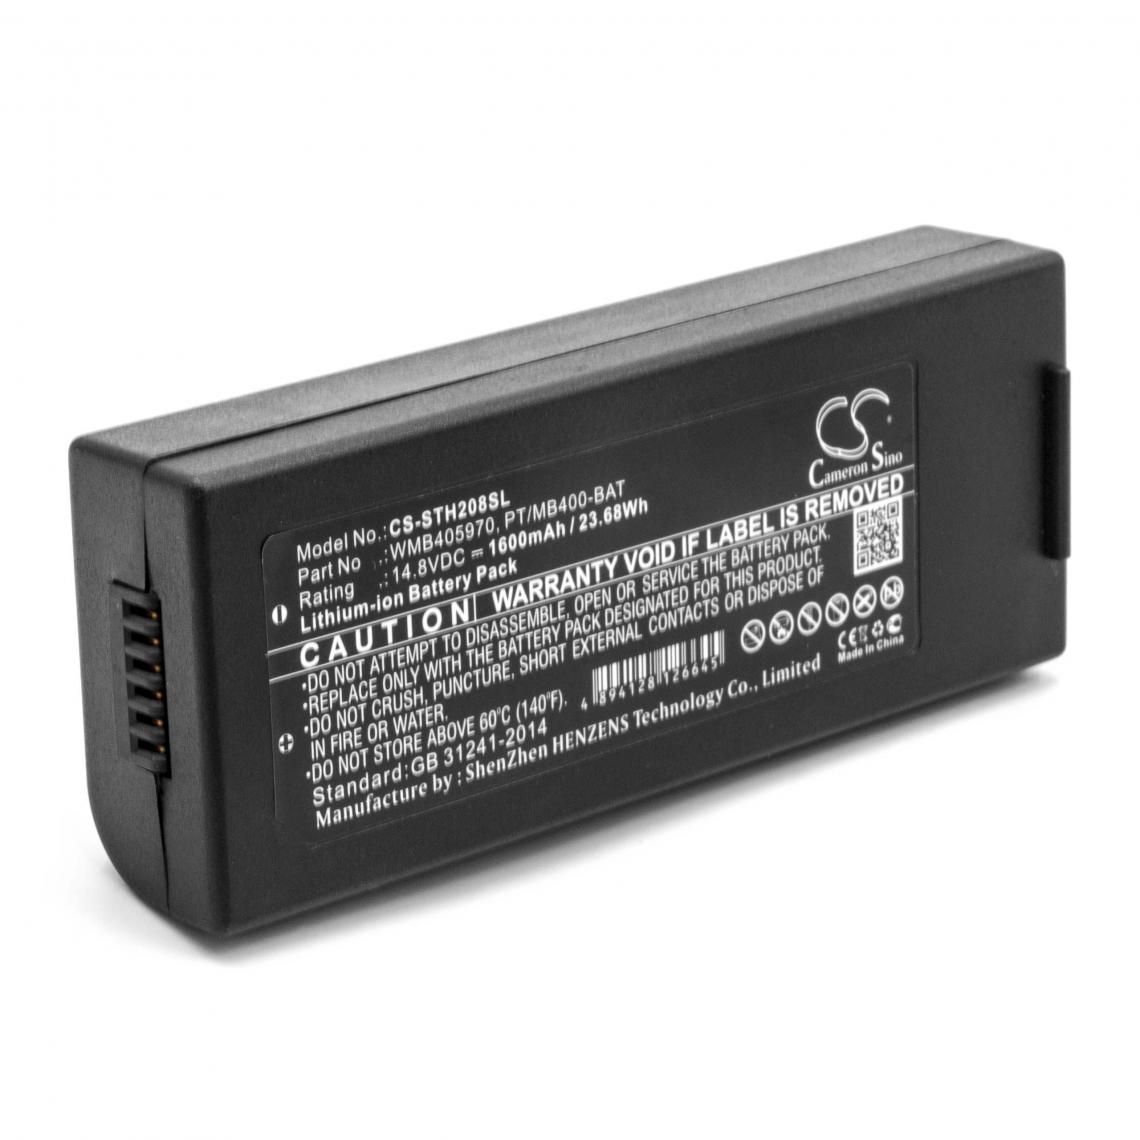 Vhbw - vhbw Li-Ion batterie 1600mAh (14.8V) pour imprimante photocopieur scanner imprimante à étiquette Lapin PT408e, PT412e - Imprimante Jet d'encre